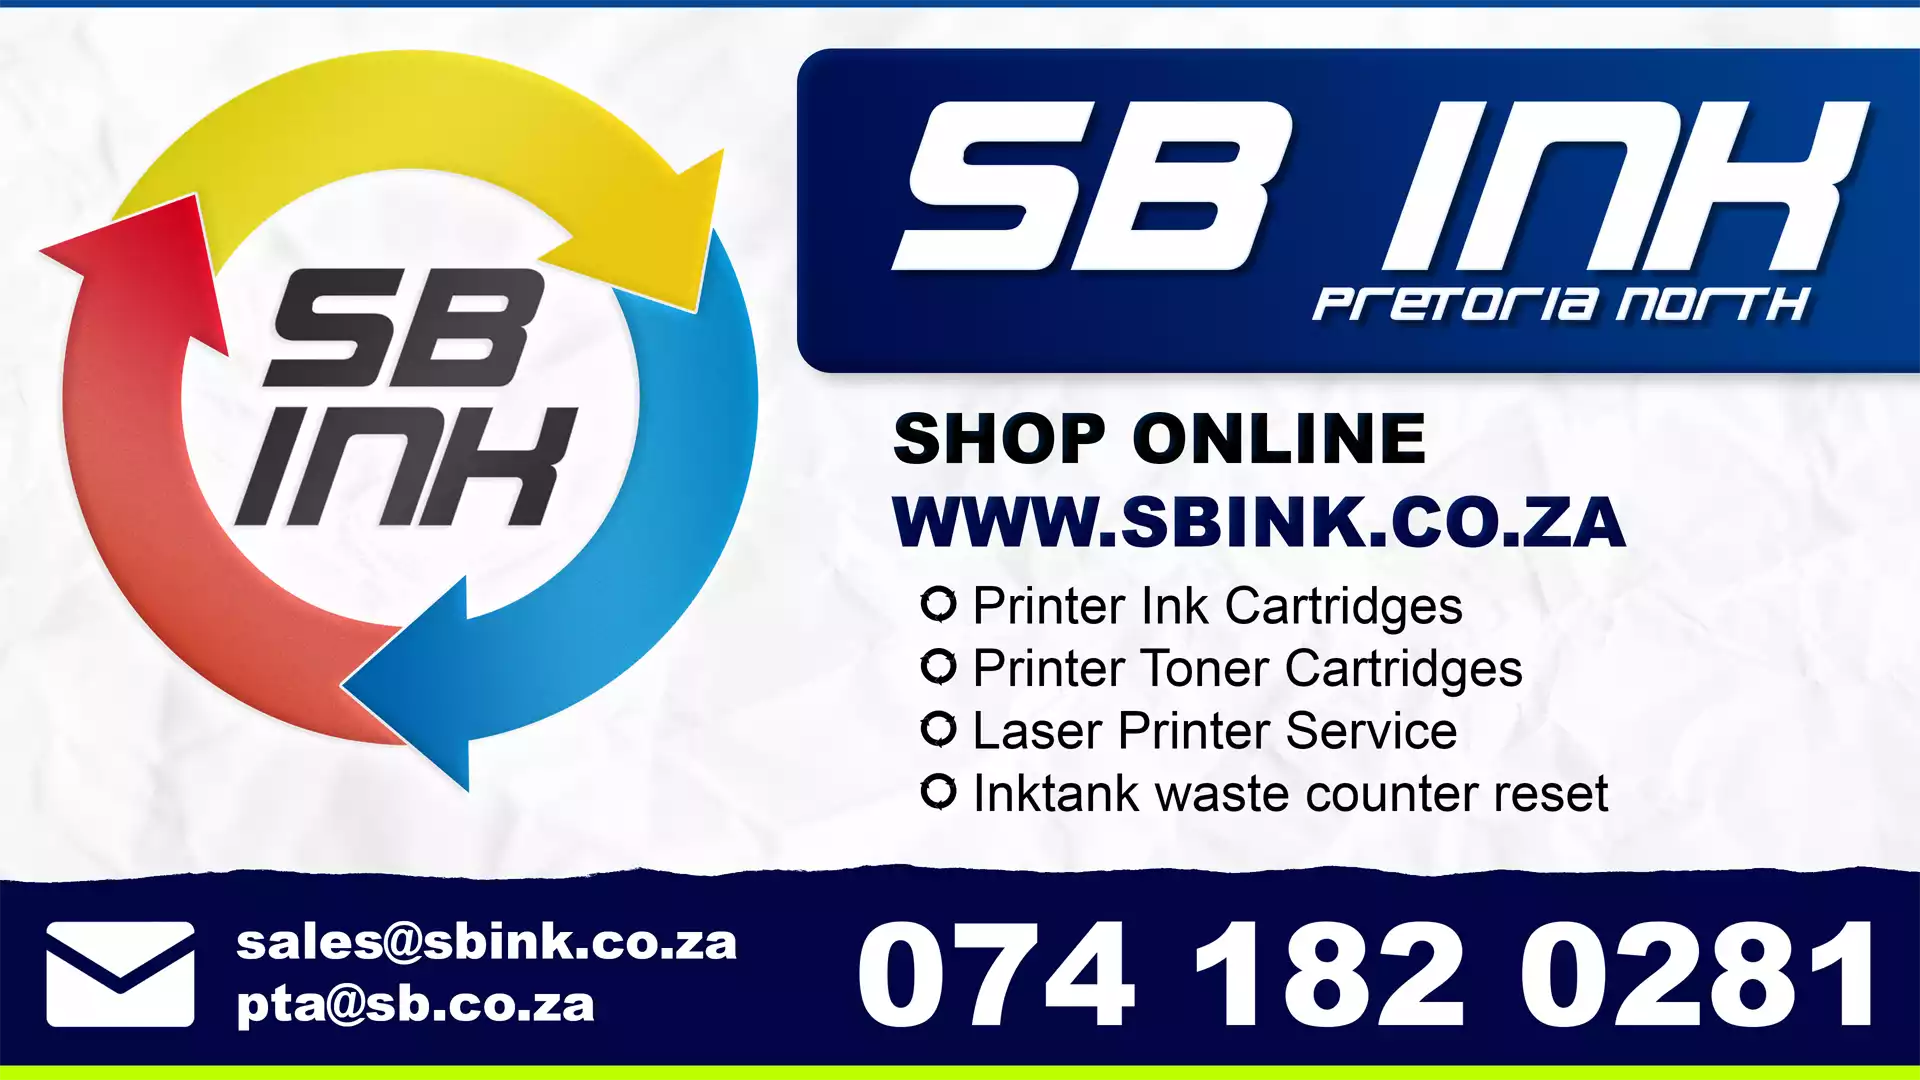 SB Ink Pretoria | Shop sign